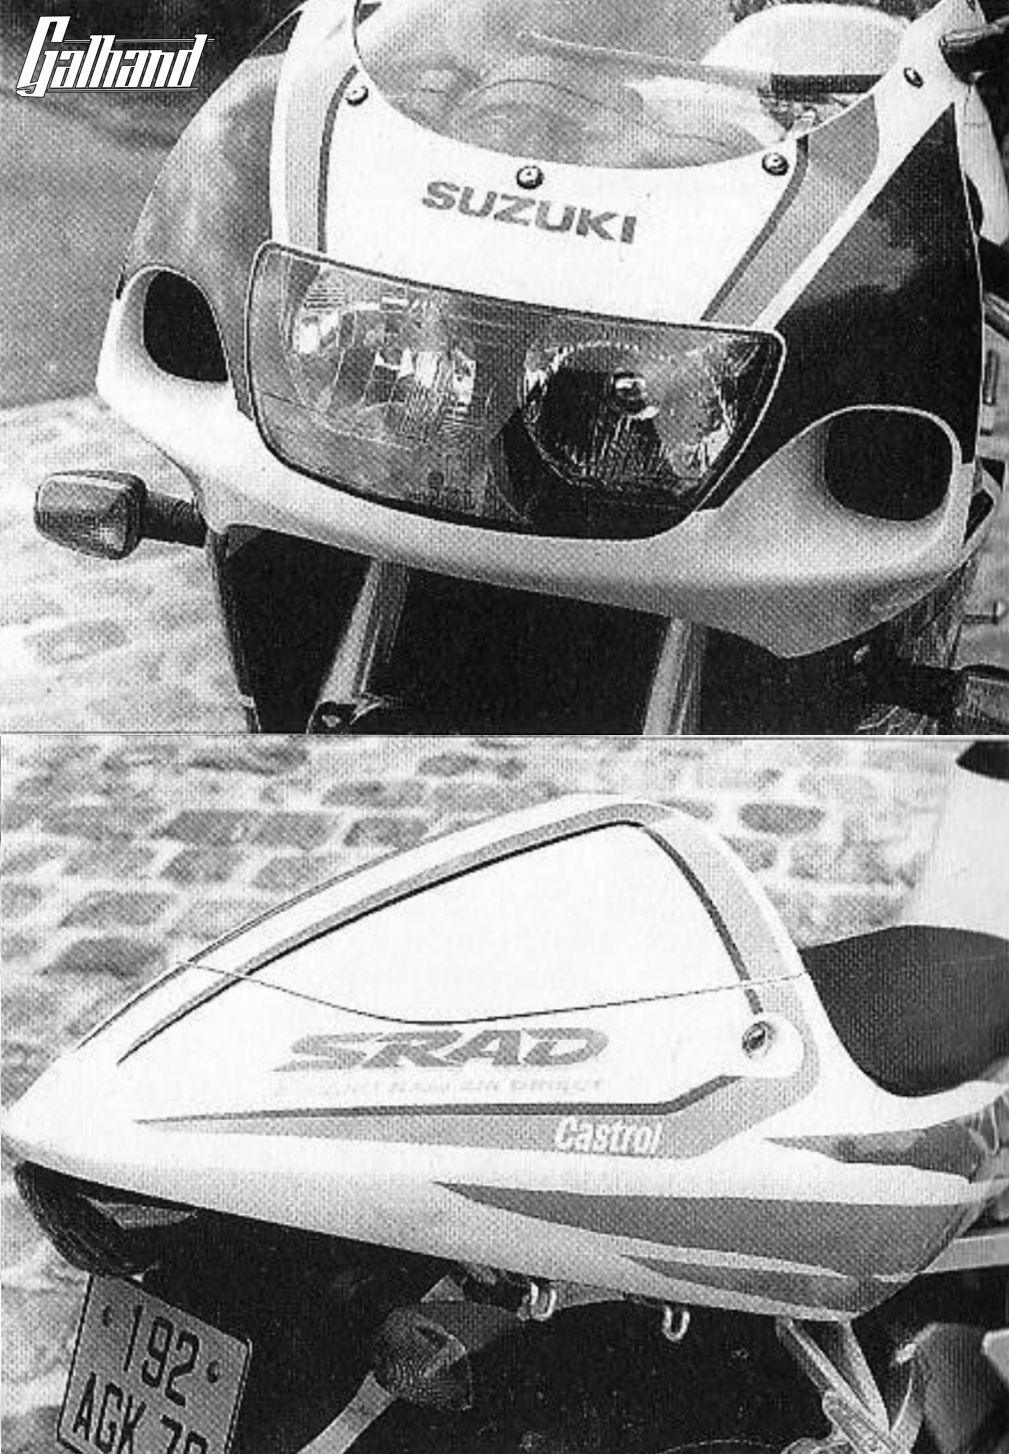 Estética Suzuki GSXR 750 SRAD 1996 - Galhand